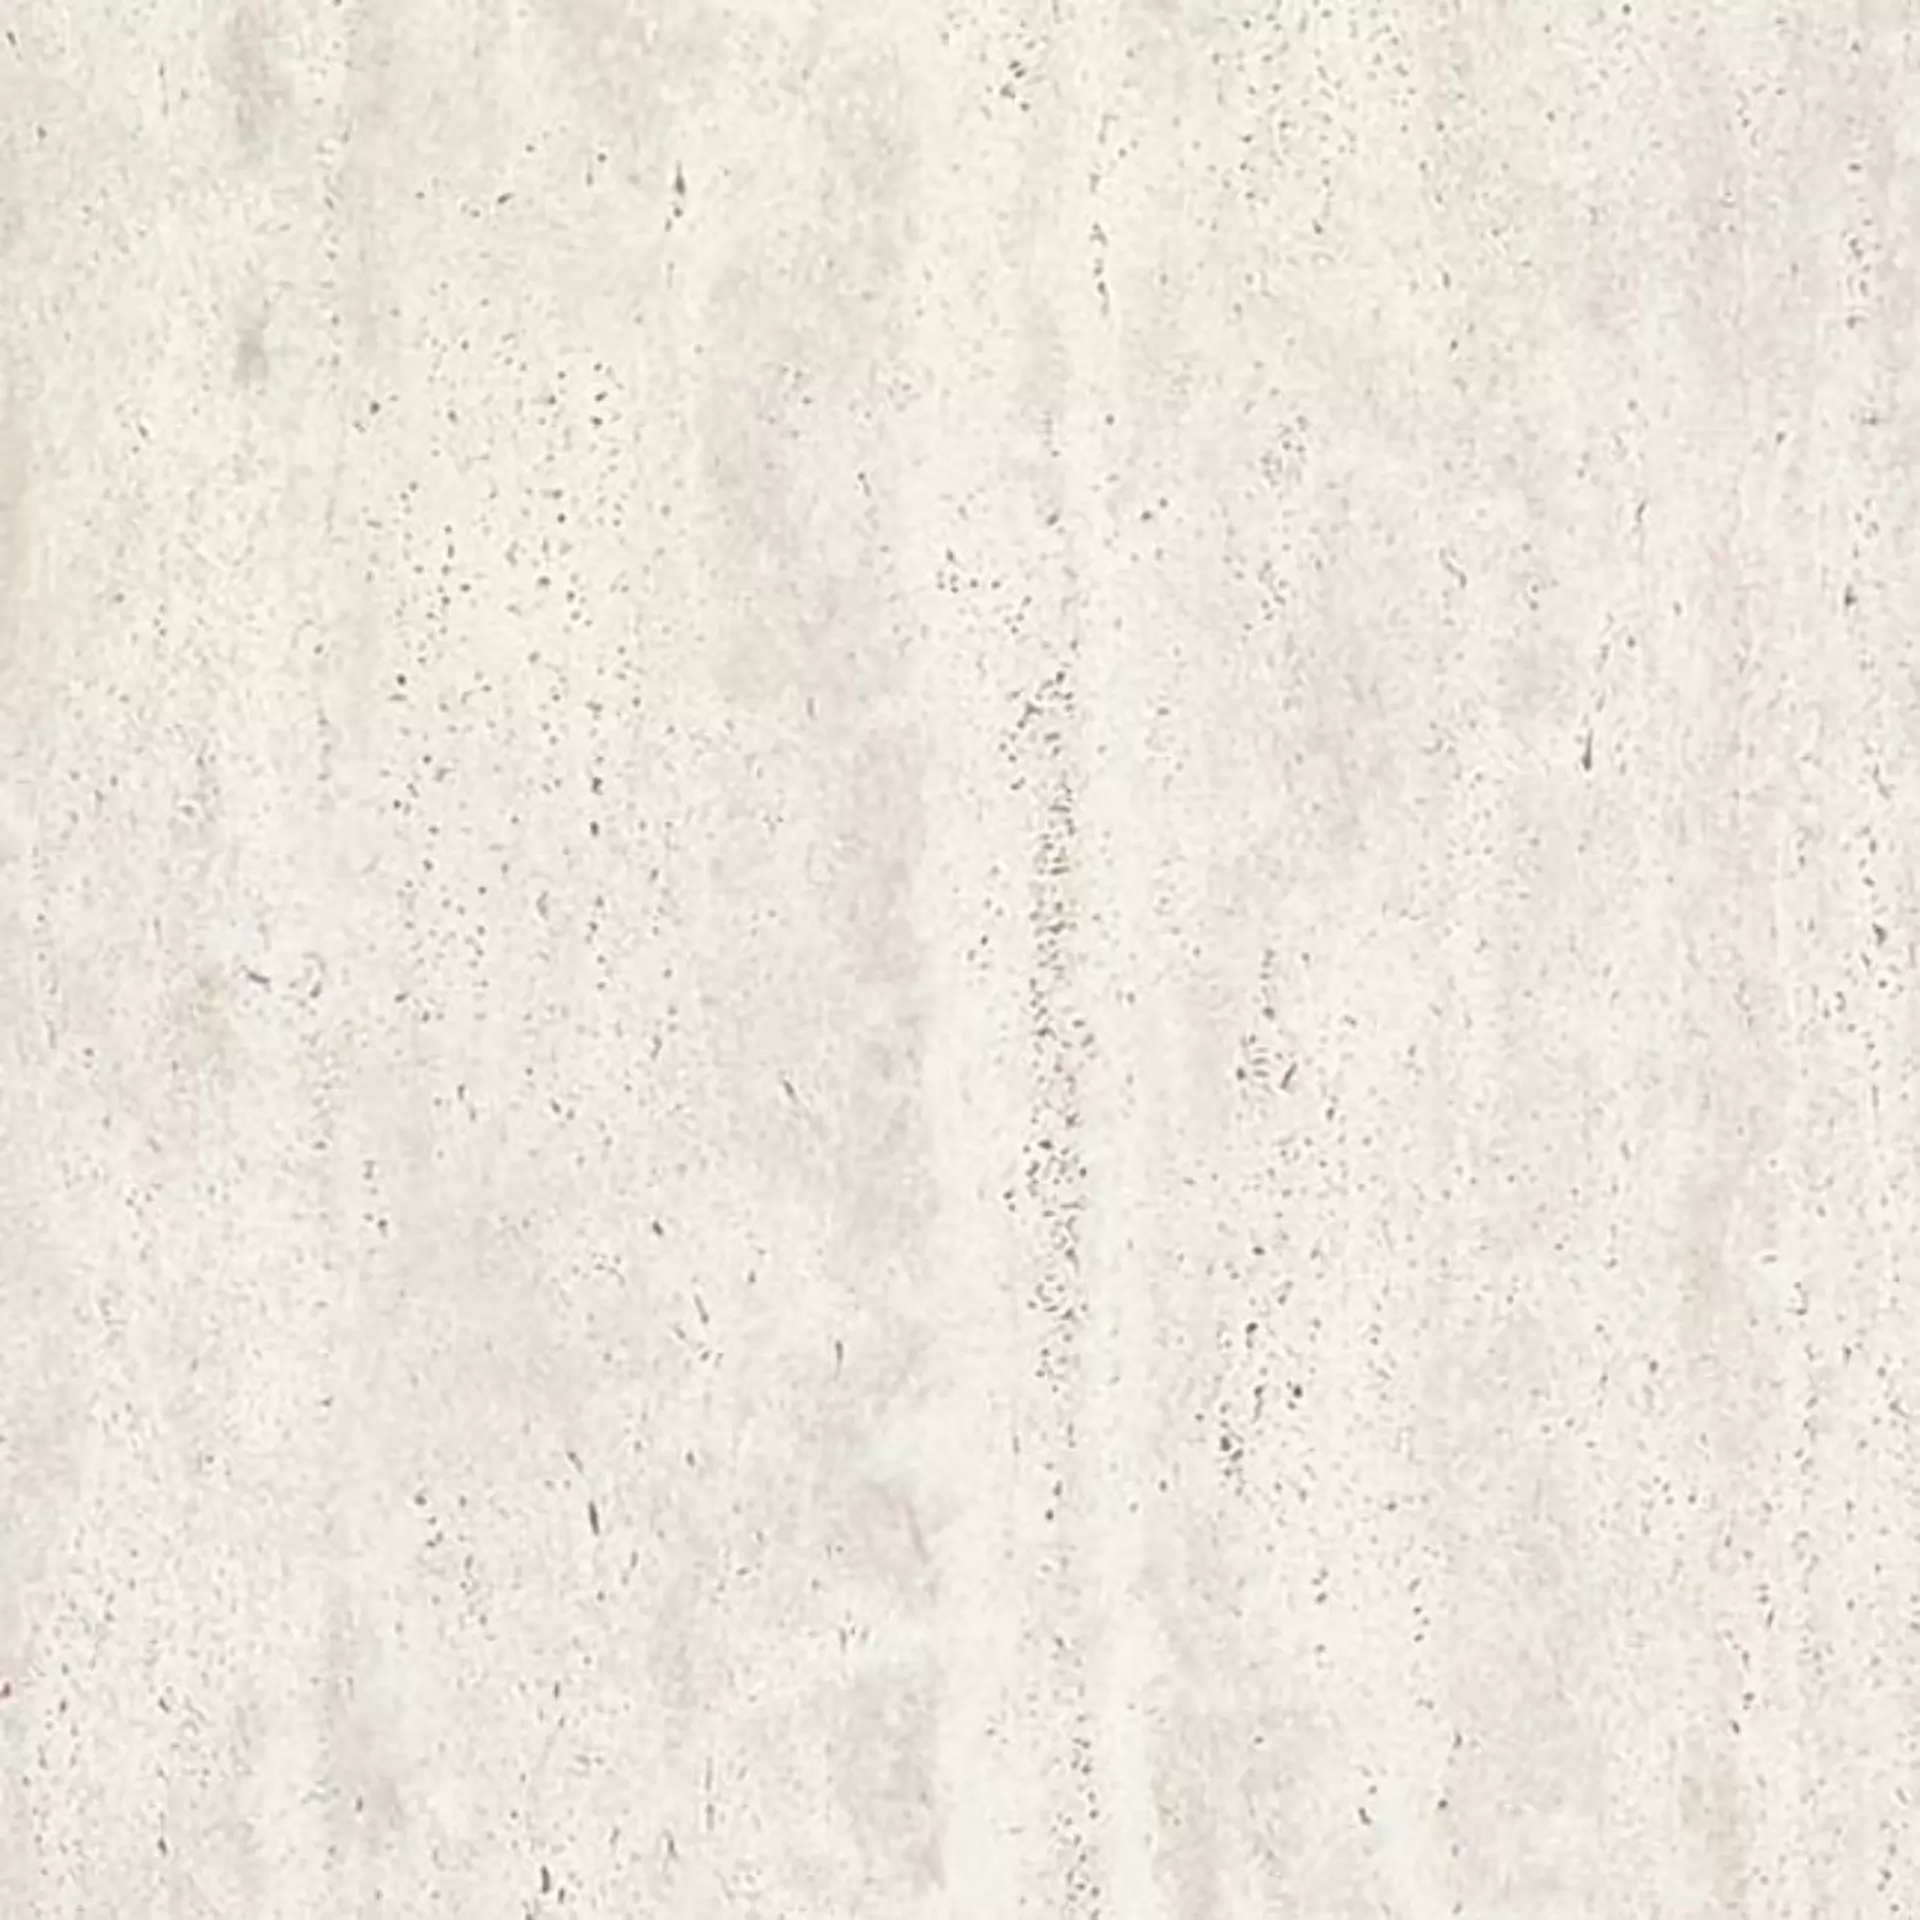 Casalgrande Marmoker Travertino Bianco Naturale – Matt 2950461 60x60cm rectified 10mm